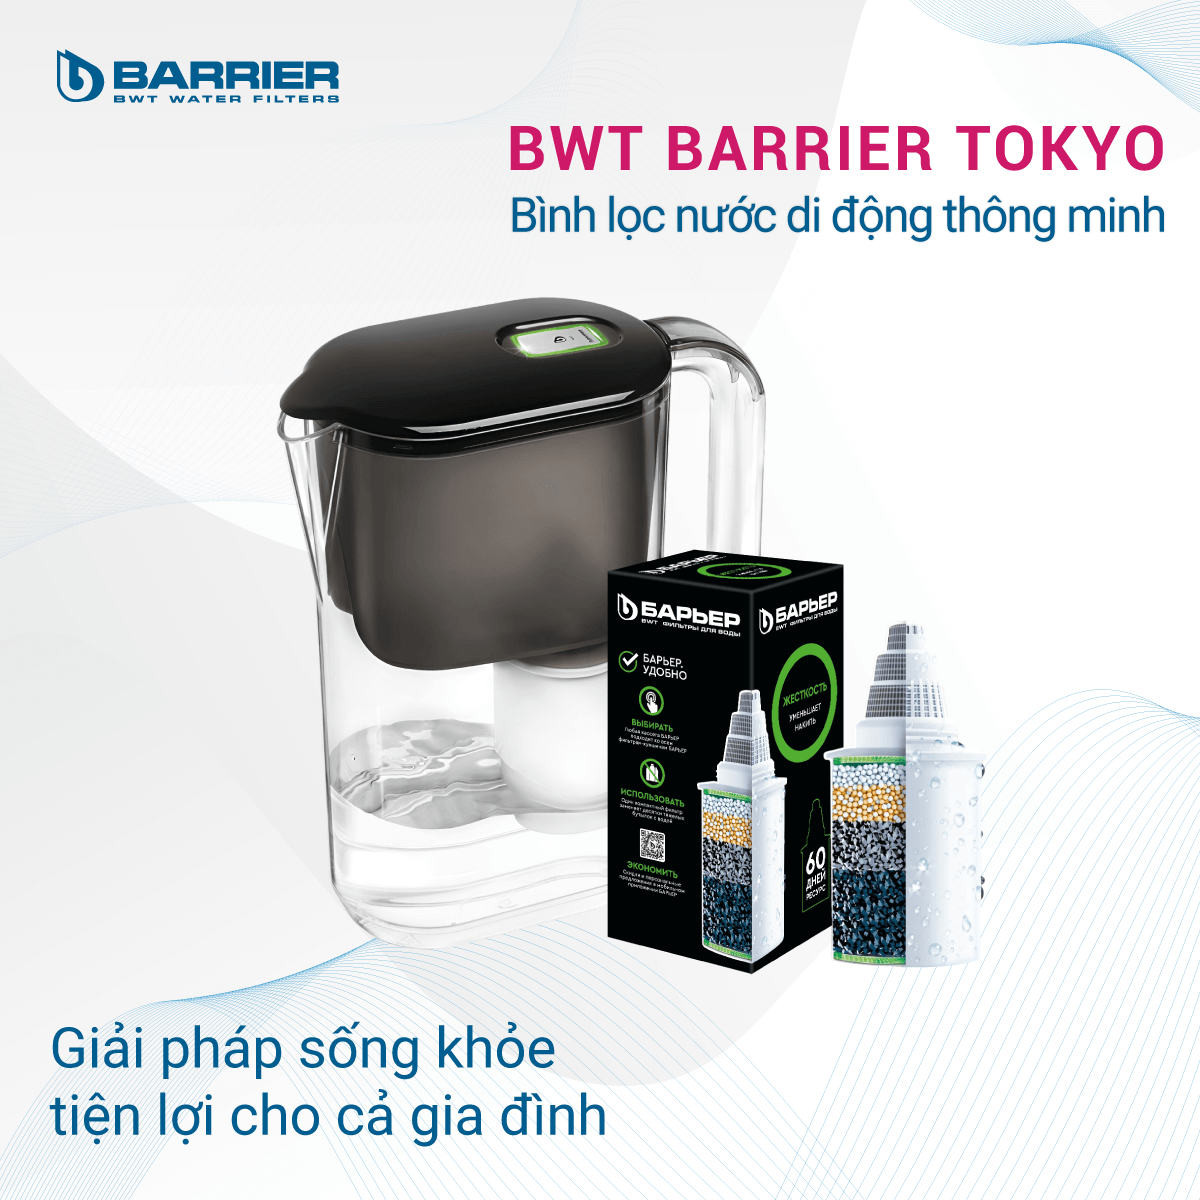 Bình lọc nước di động thông minh BWT Barrier Tokyo tiện lợi dễ dàng sử dụng